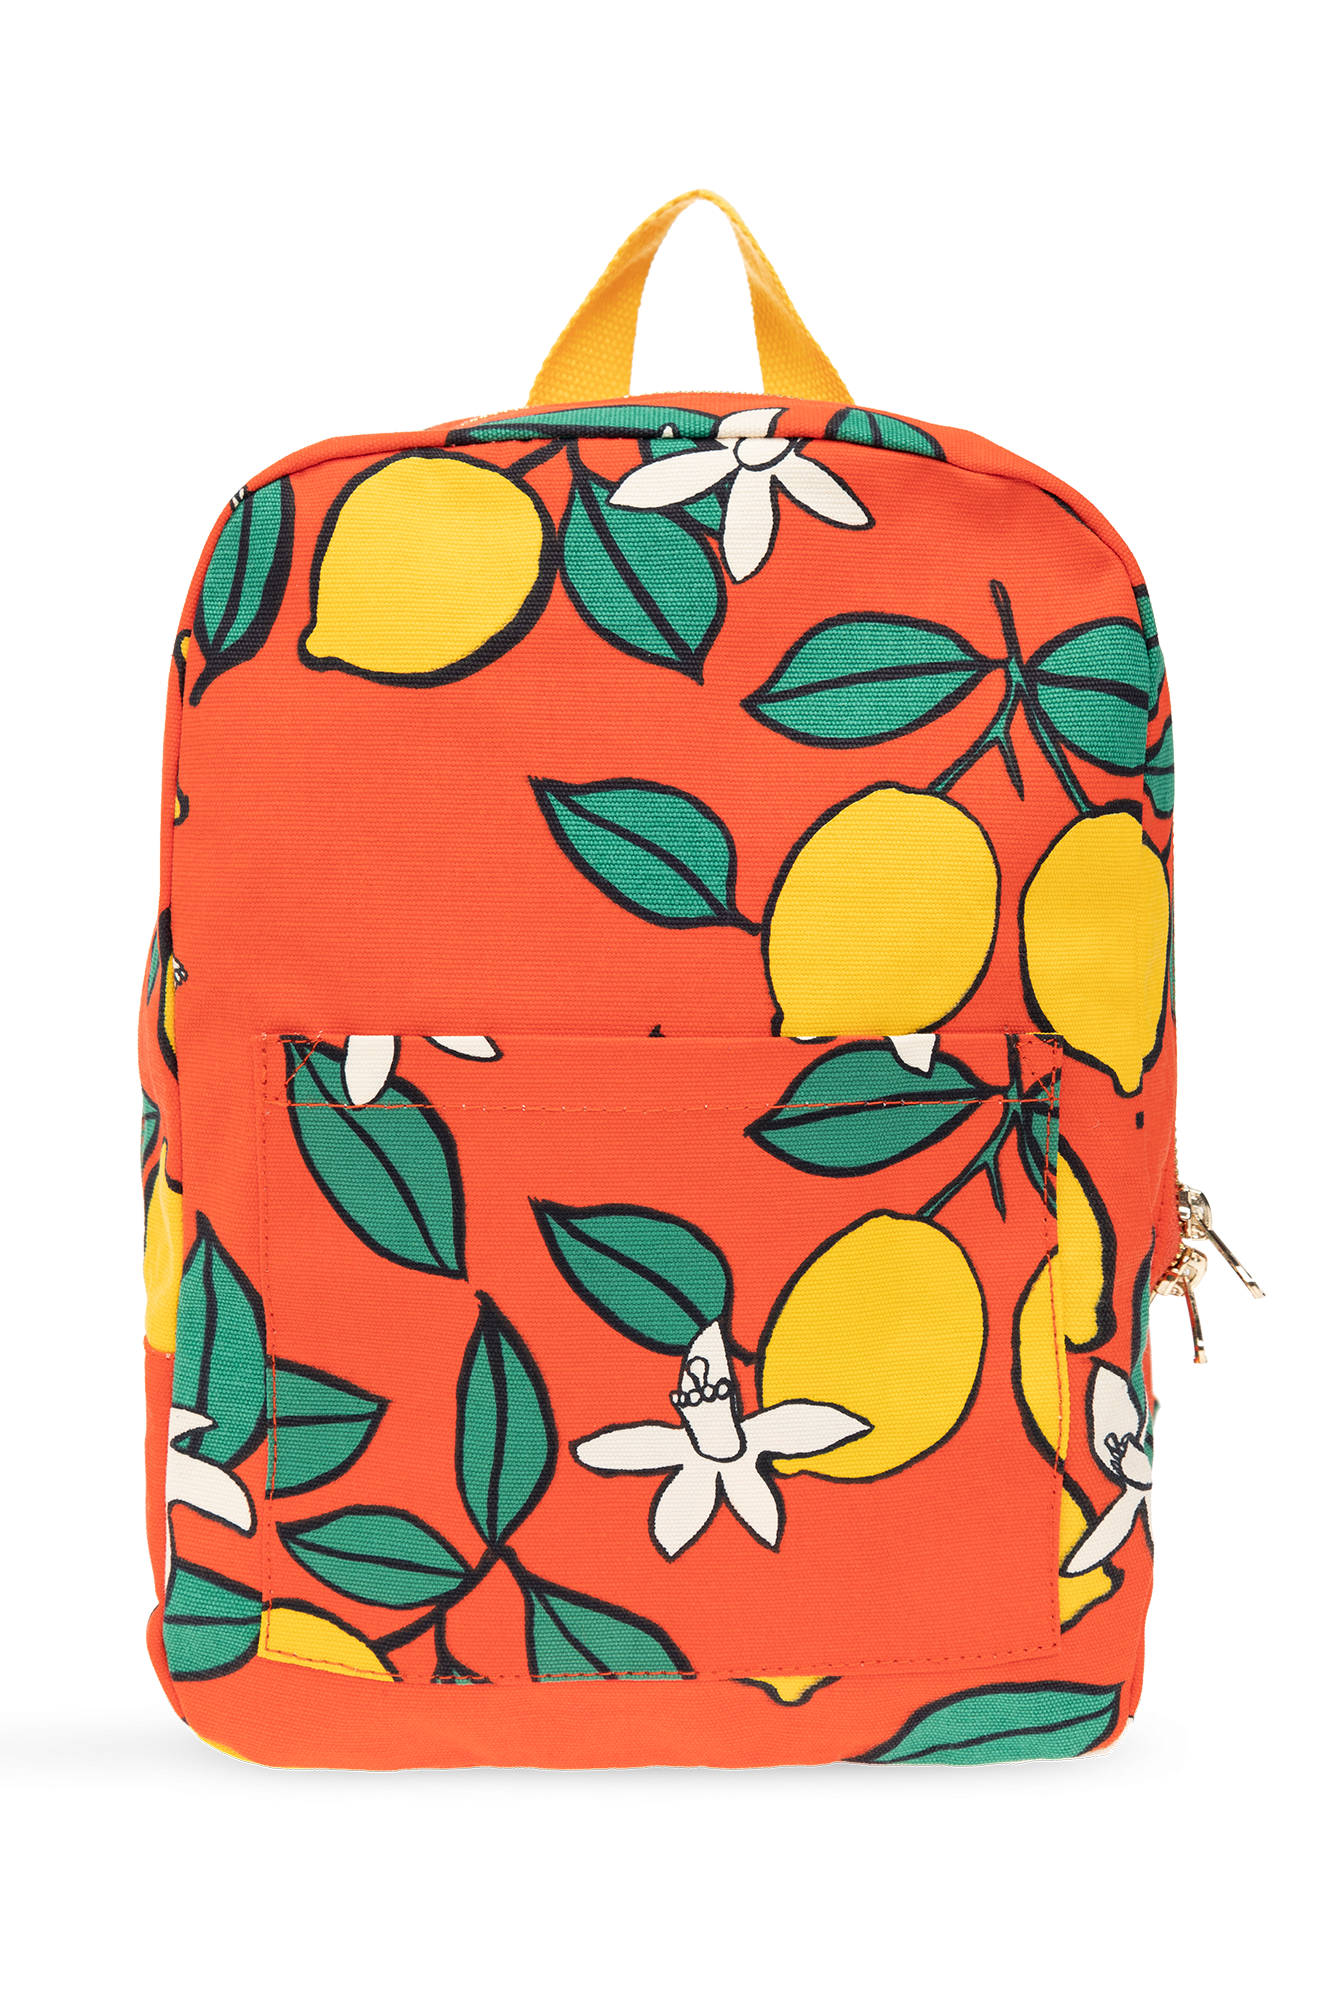 Mini Rodini Backpack with lemon motif